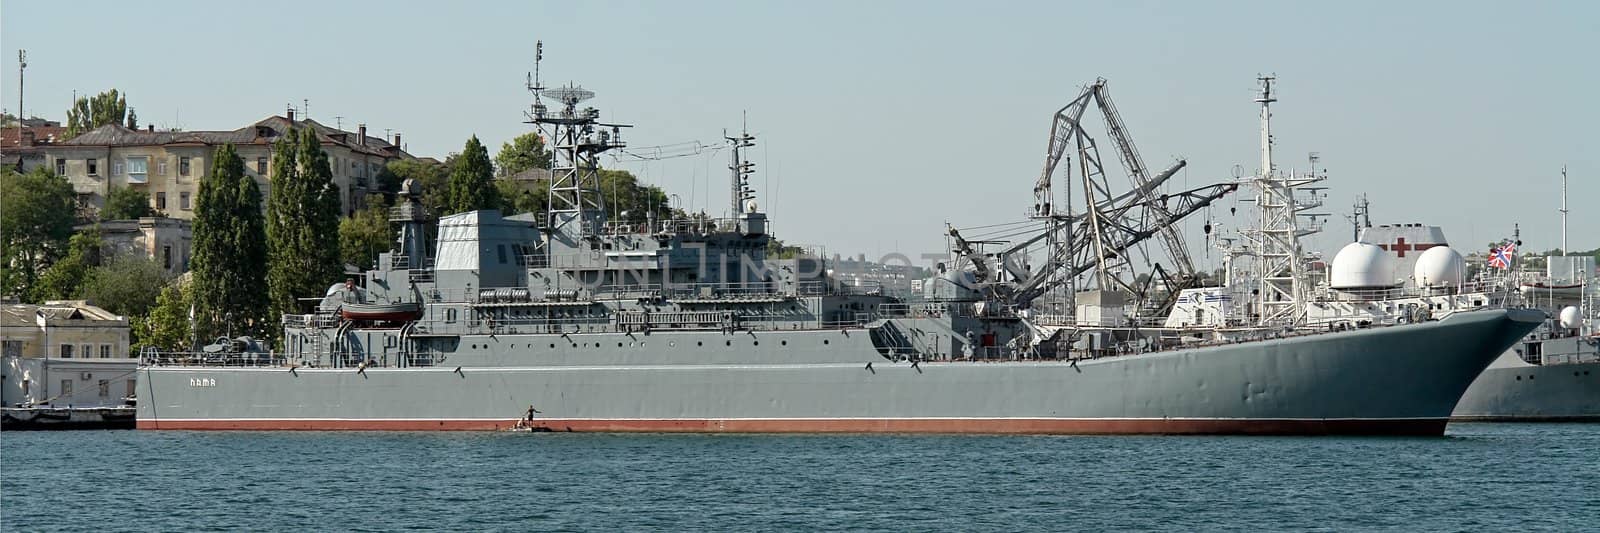 very large warship in the Sevastopol port